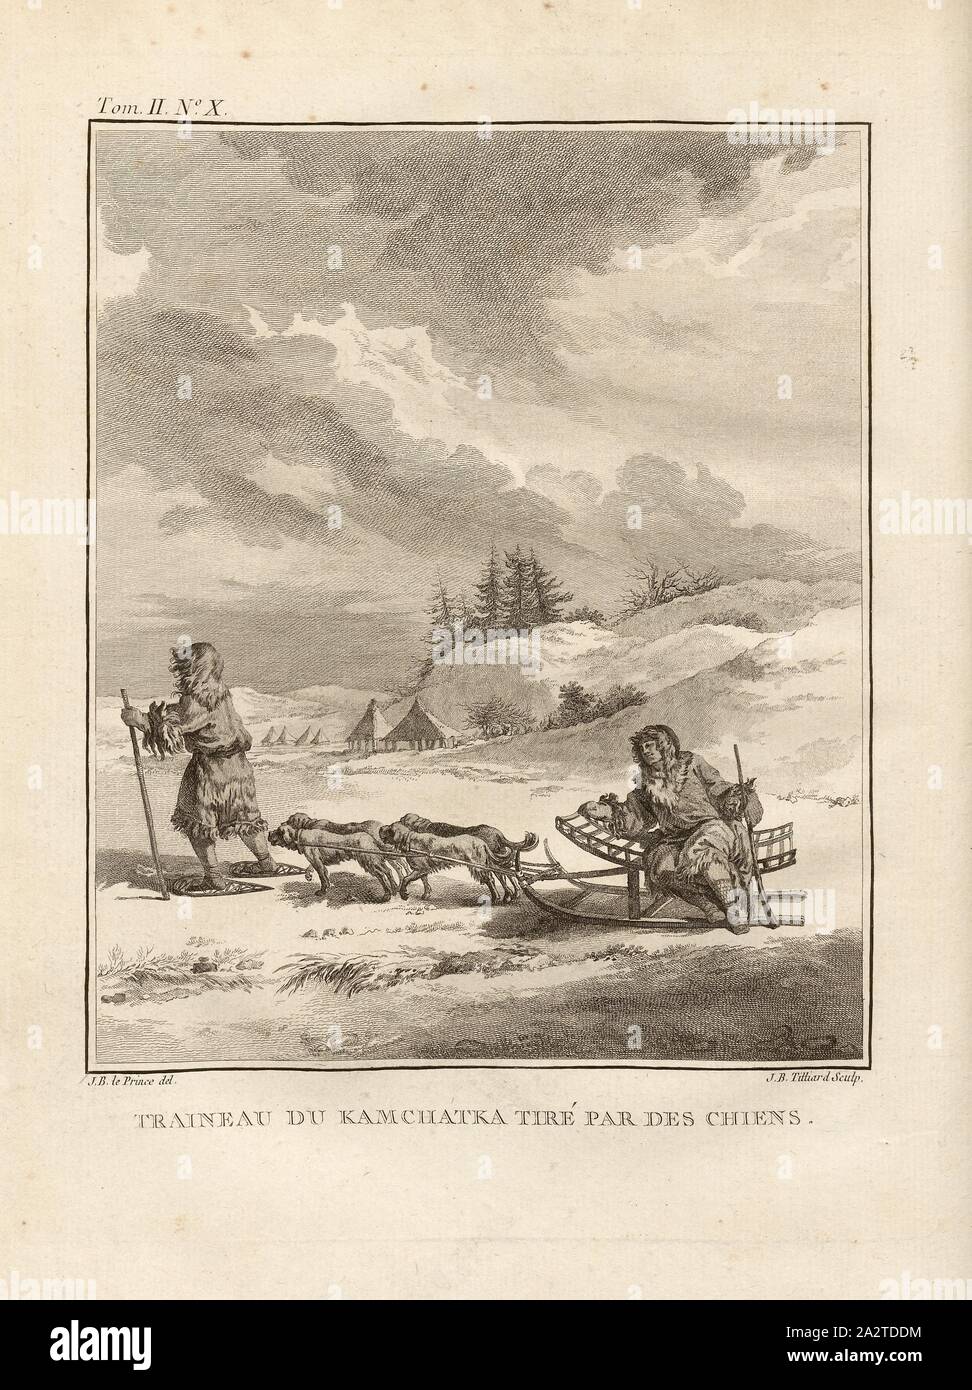 Kamchatka sled pulled by dogs, Carriage drawn by dogs in a snowy landscape, Signed: J. B. le Prince (del.), J. B. Tilliard (sculp.), Copper engraving, no. X, after p. 48 (vol. 2), Le Prince, Jean-Baptiste ; Tilliard, Jean-Baptiste, 1768, M. Kracheninnikow: Voyage en Sibérie, contenant la description du Kamtchatka, ou l'on trouve. Paris: chez Debure, 1768 Stock Photo